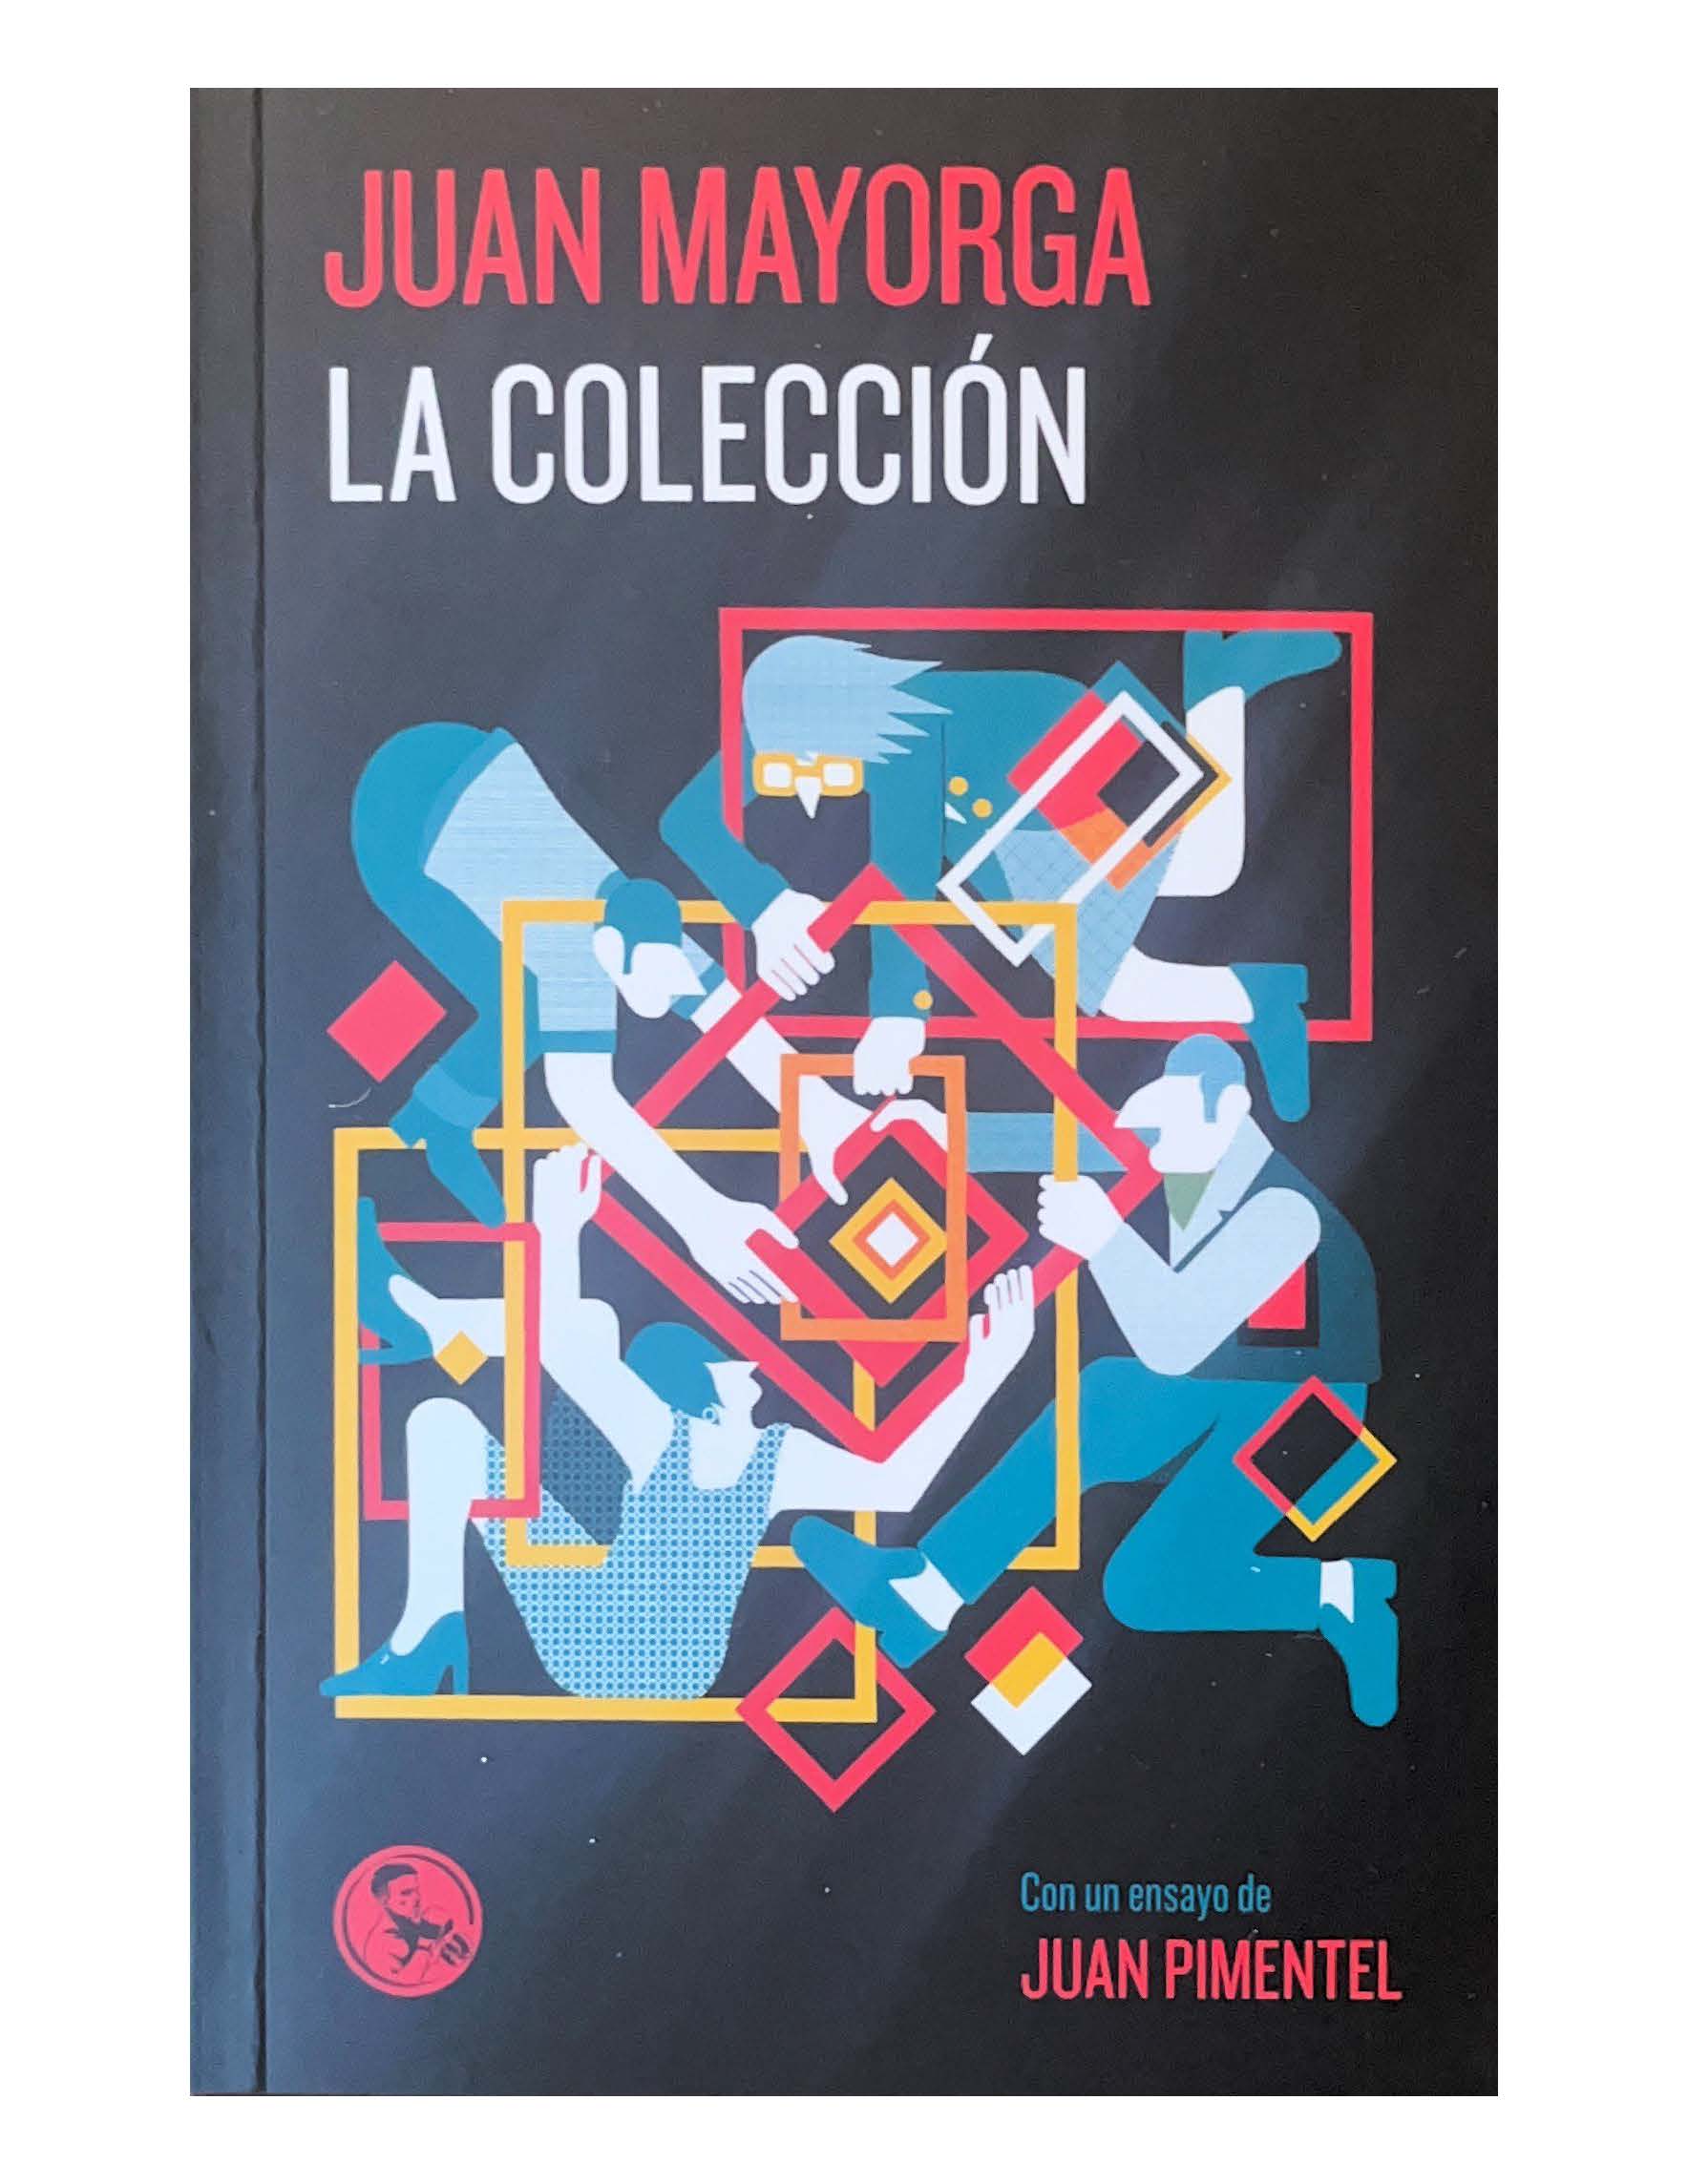 Juan Pimentel publica un ensayo/epílogo en la última obra de Juan Mayorga, La Colección